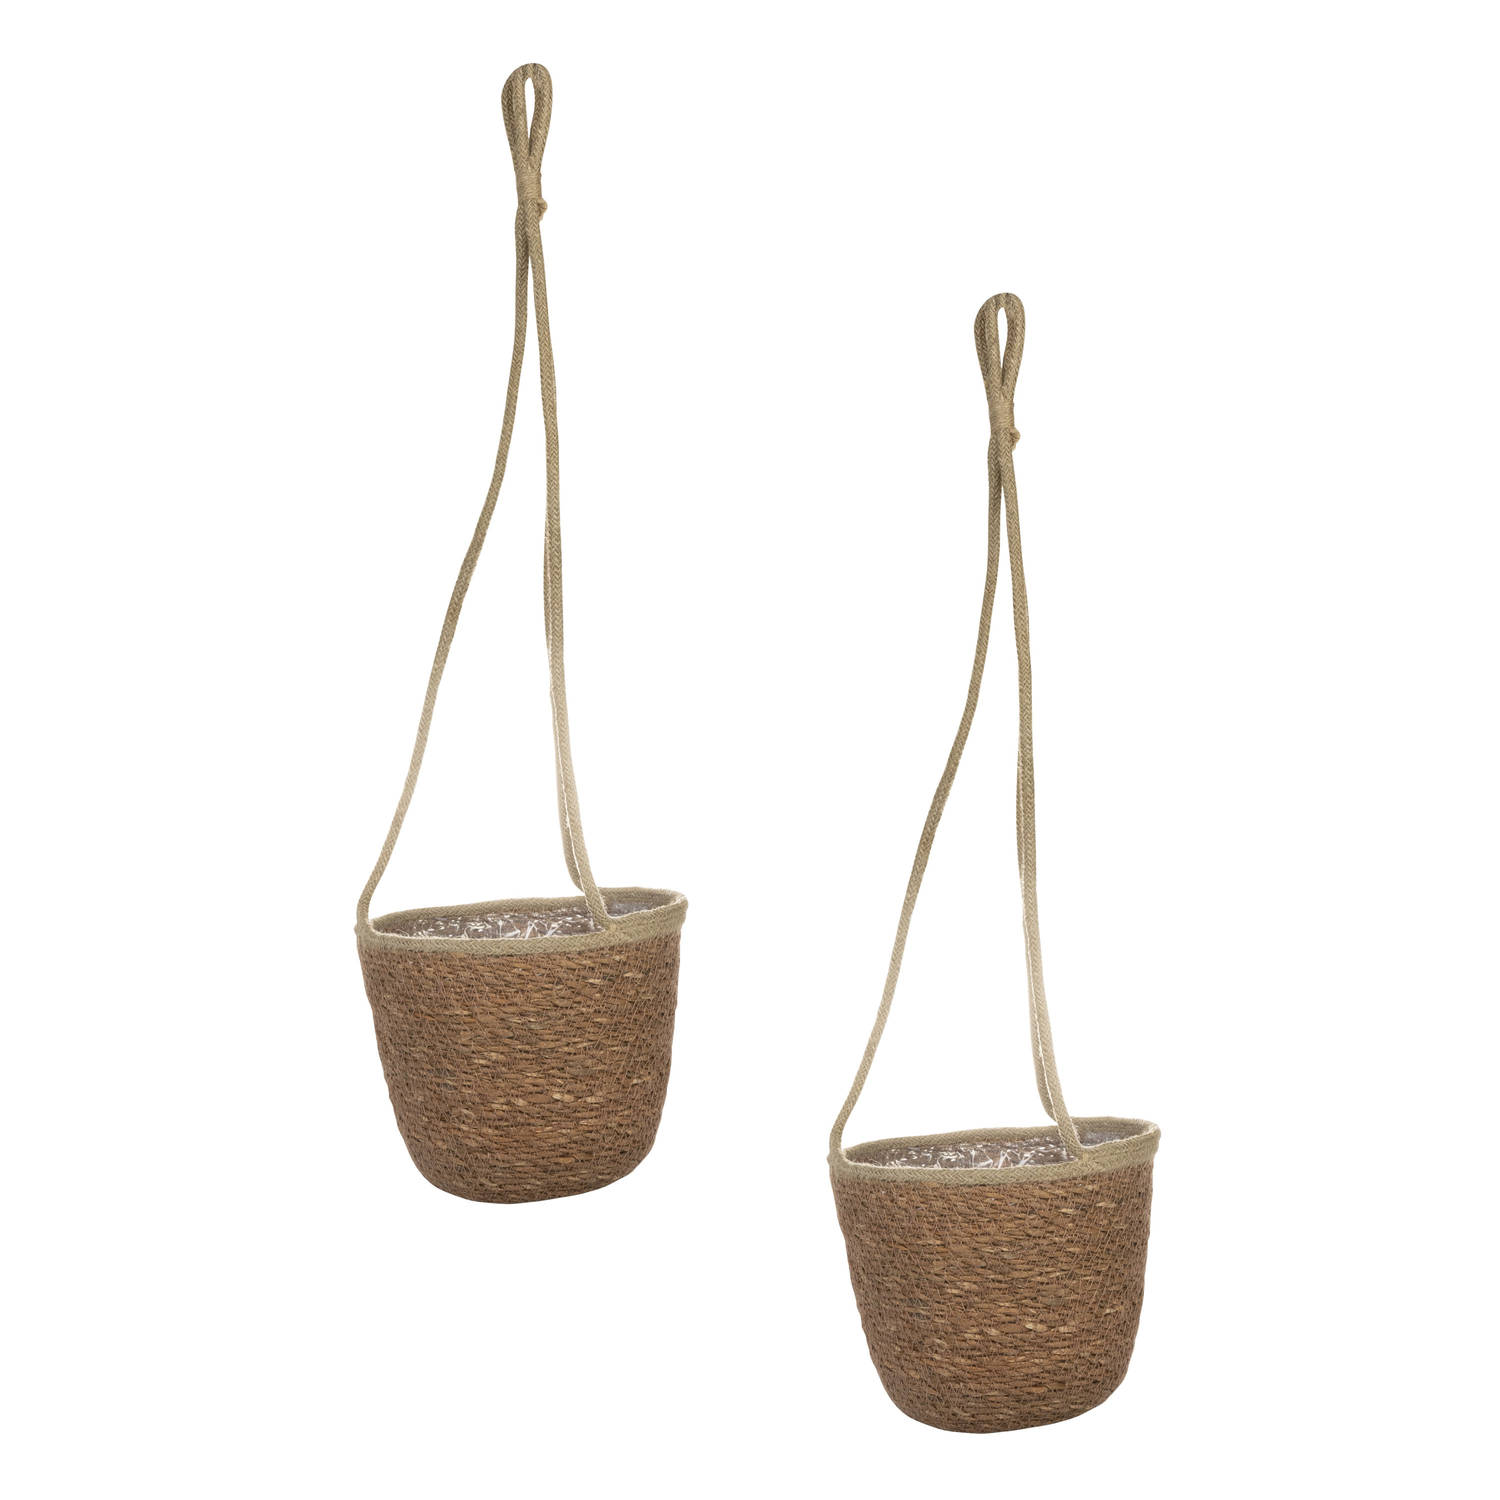 Set van 2x stuks hangende plantenpot/bloempot van jute/zeegras dia 19 cm en hoogte 17 cm camel bruin - Plantenpotten